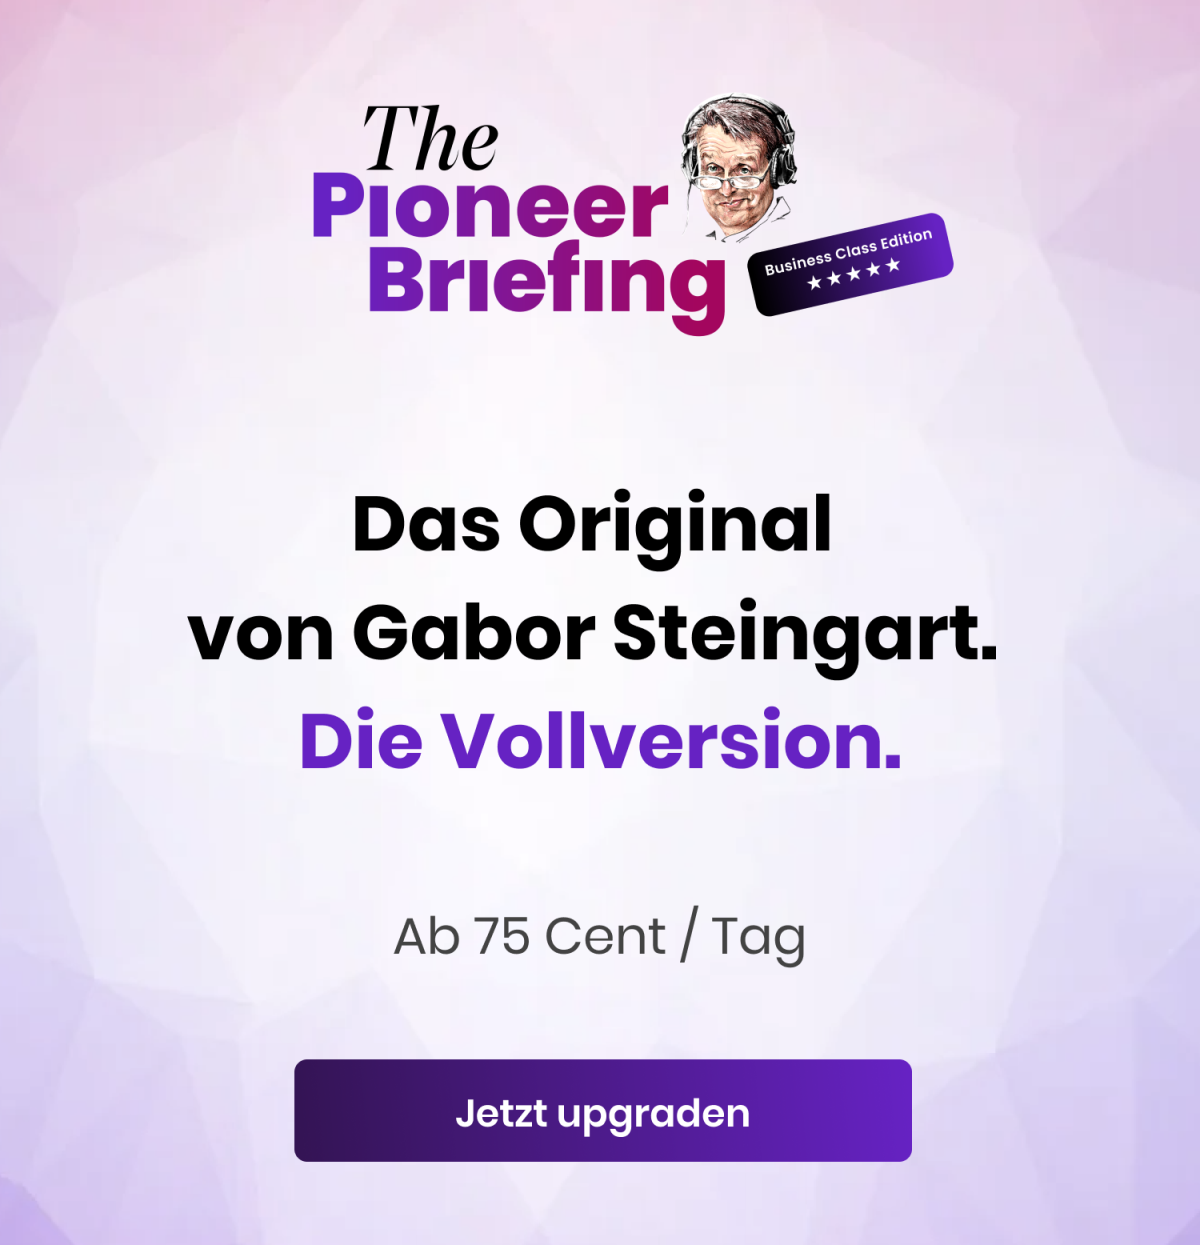 Marketing Teaser The Pioneer Briefing Business Class "Das Original von Gabor Steingart. Die Vollversion"